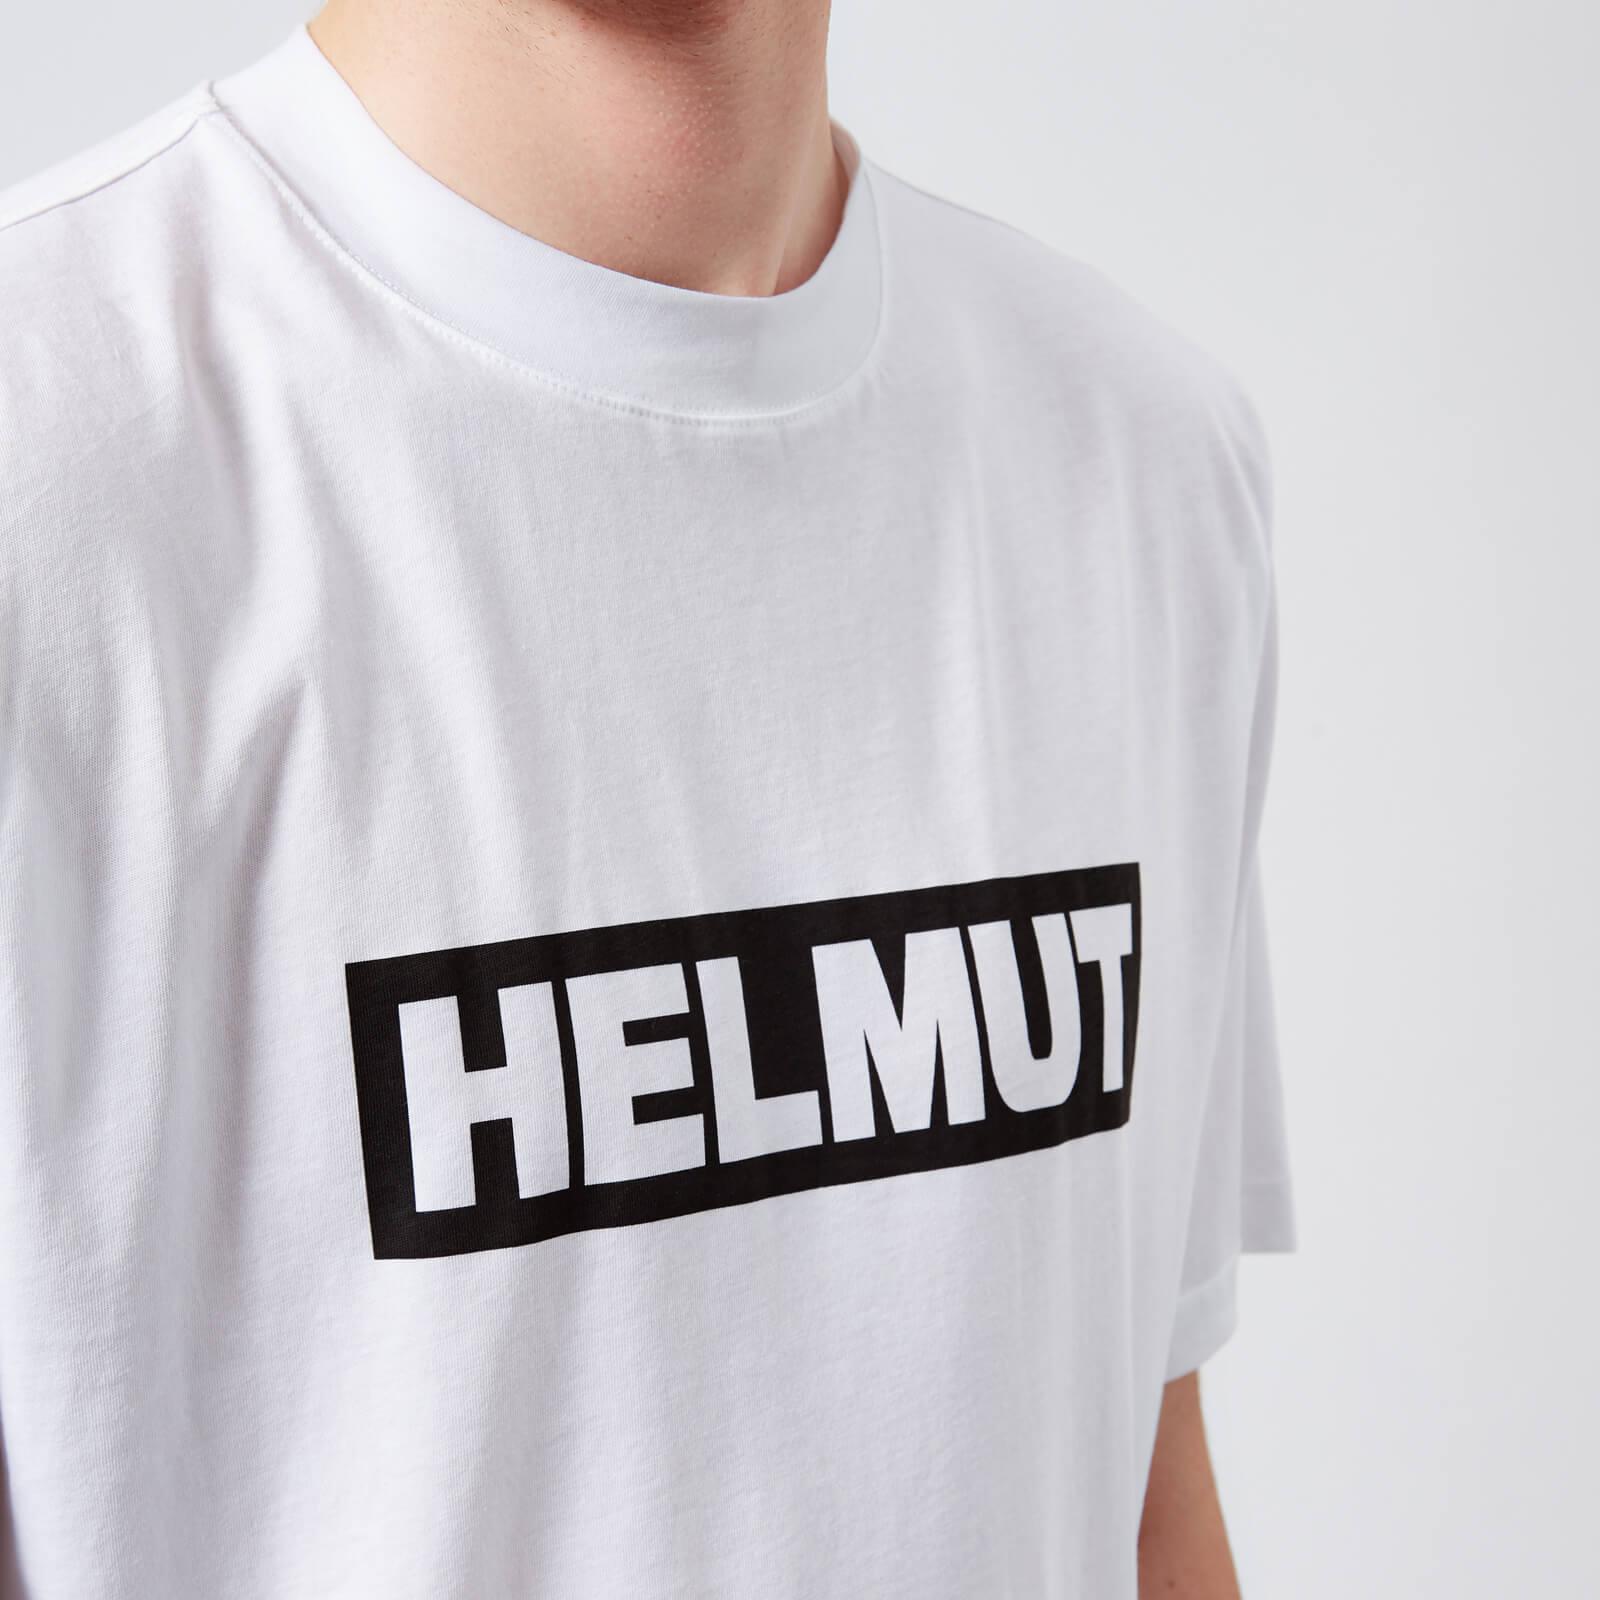 Helmut Lang Cotton Helmut Box Logo T-shirt in White for Men - Lyst